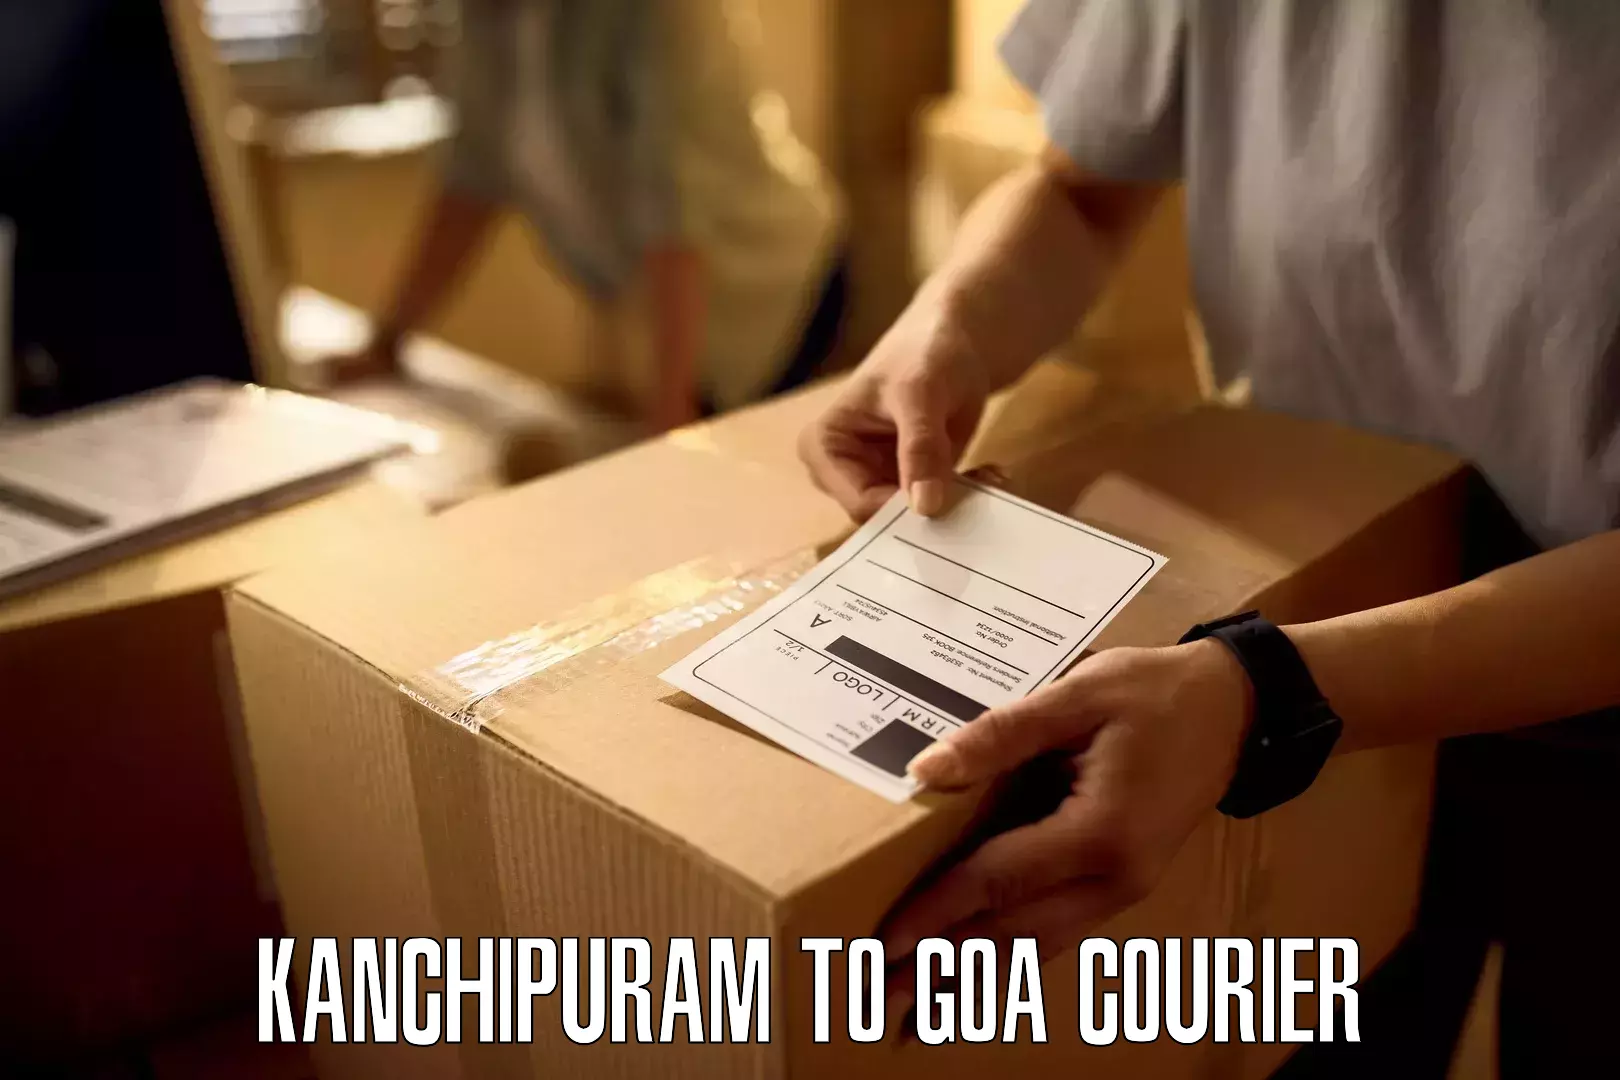 Professional courier handling Kanchipuram to Goa